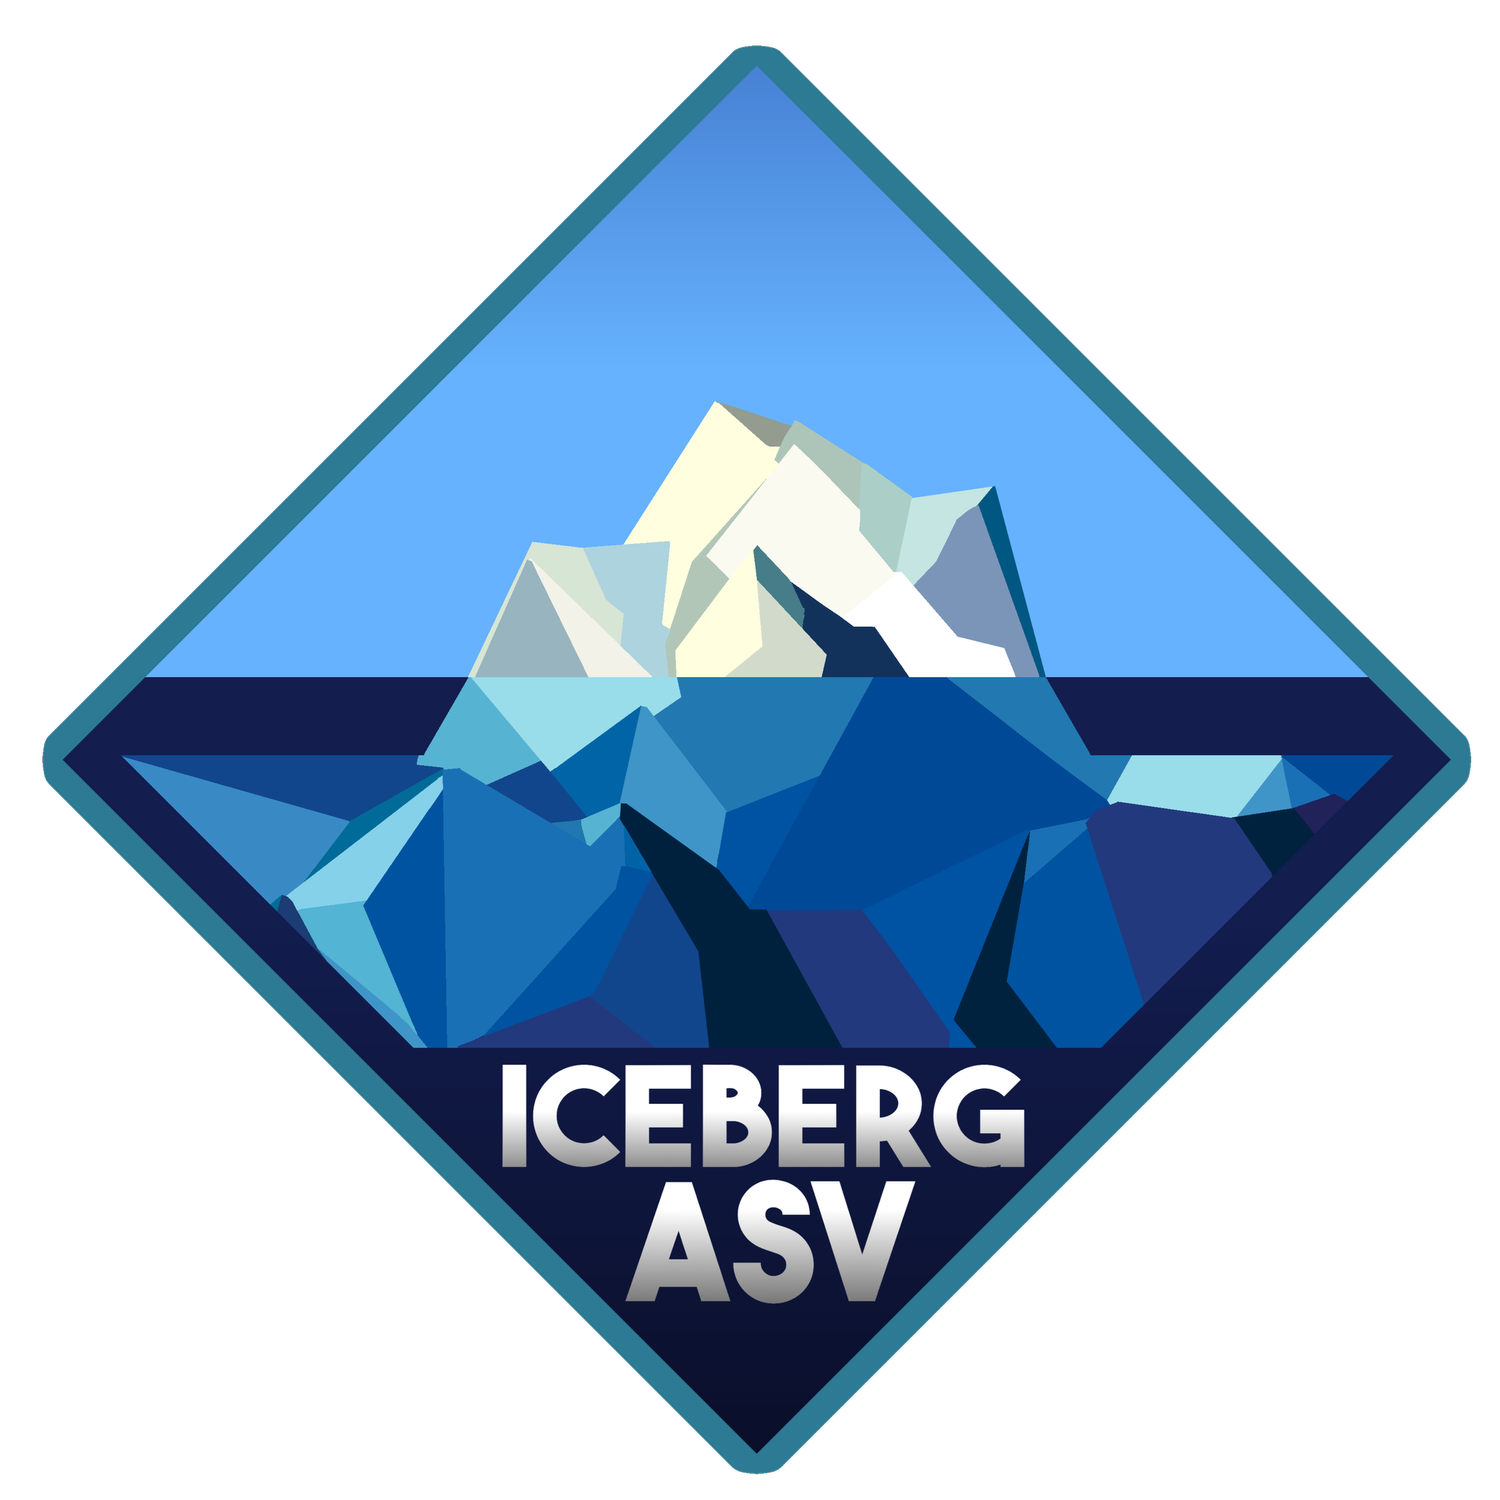 IcebergASV